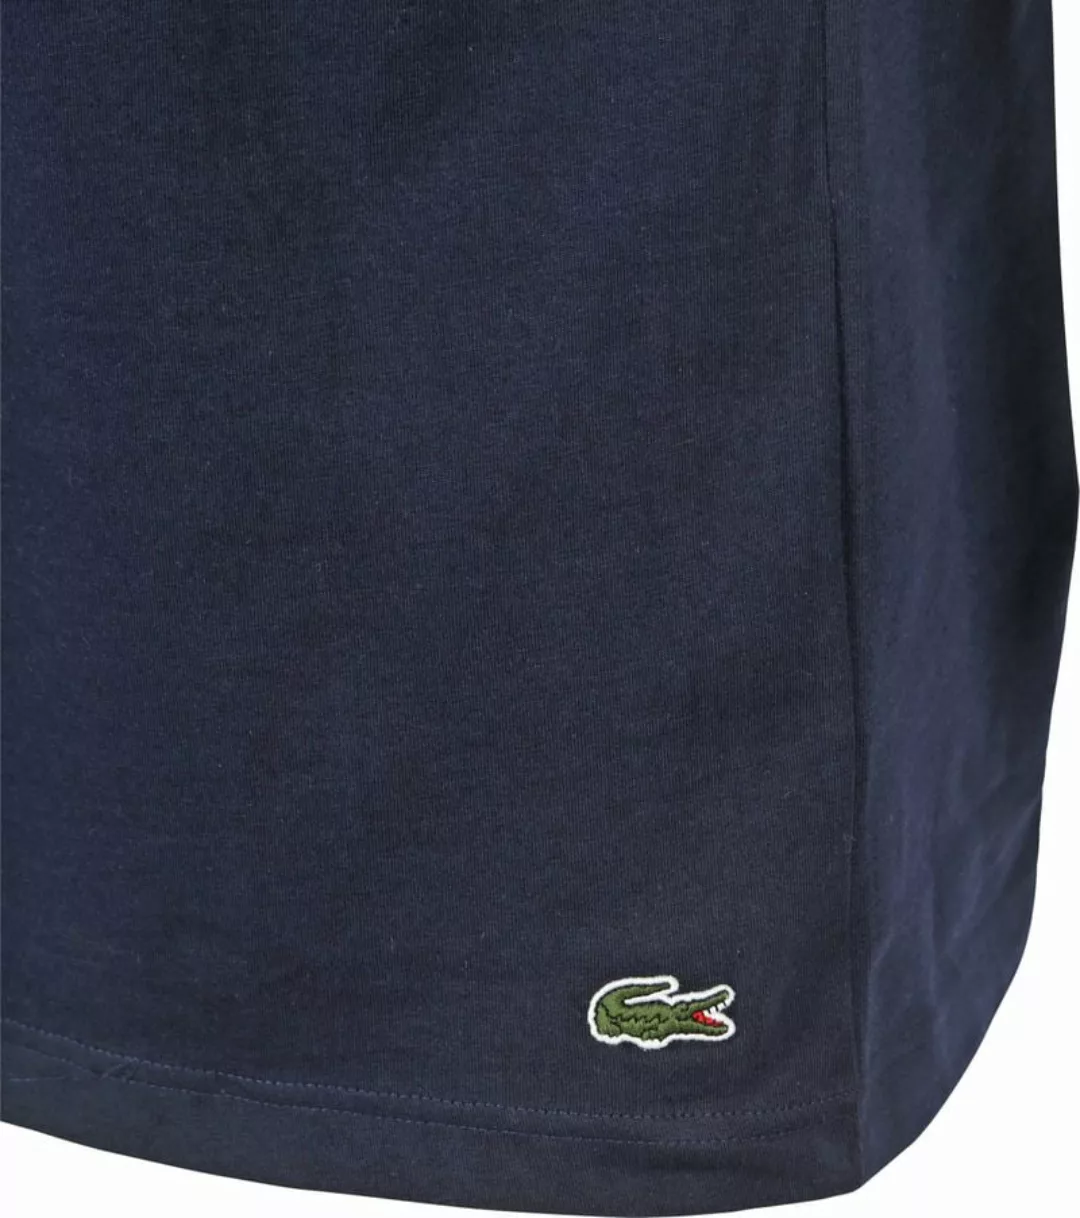 Lacoste T-Shirt T-SHIRT mit großem Lacoste Logodruck günstig online kaufen